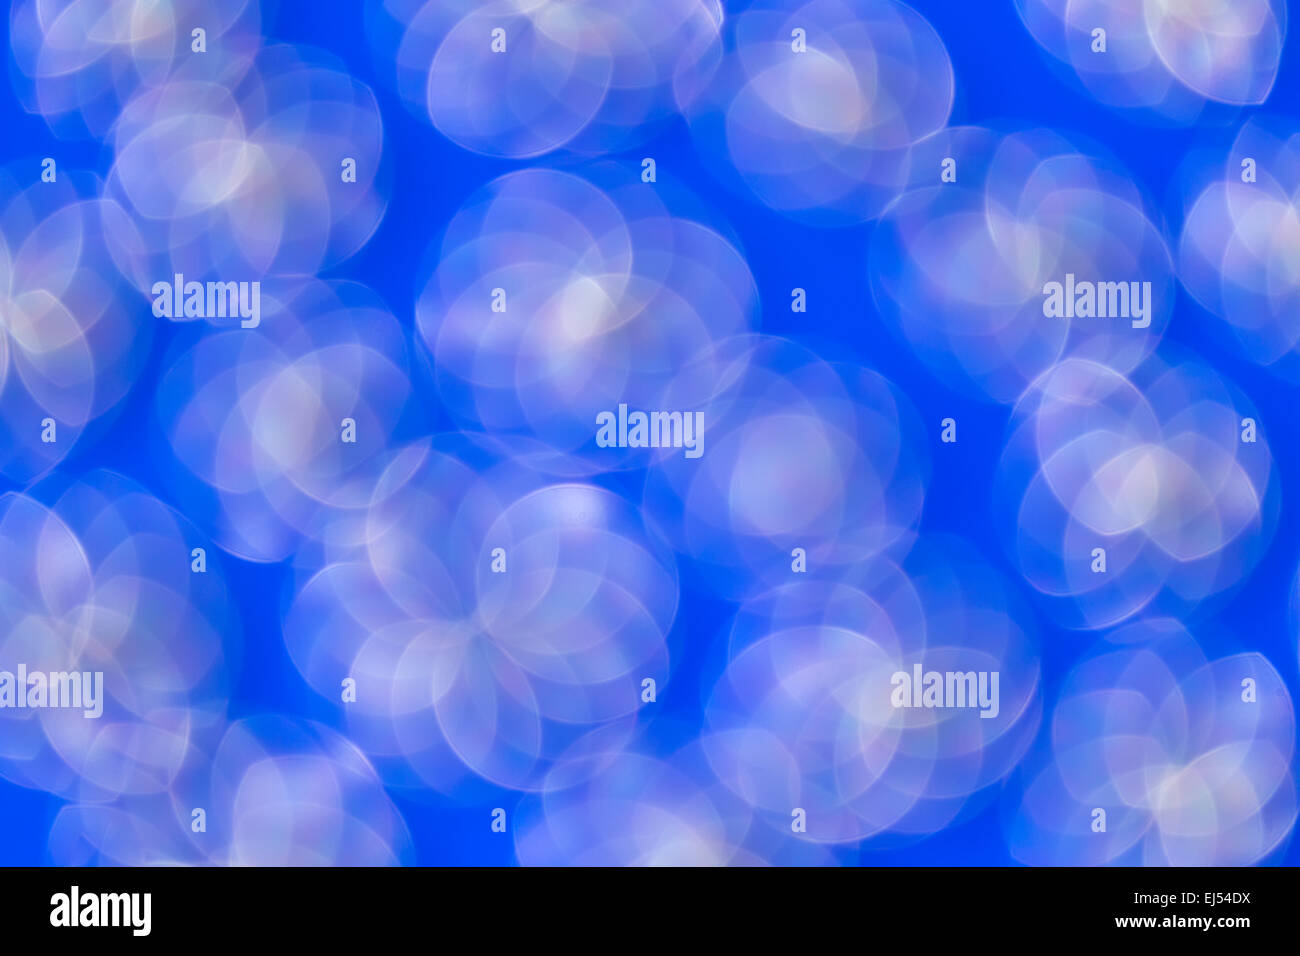 Abstract blurred cercles sur fond bleu.élément de design. Banque D'Images